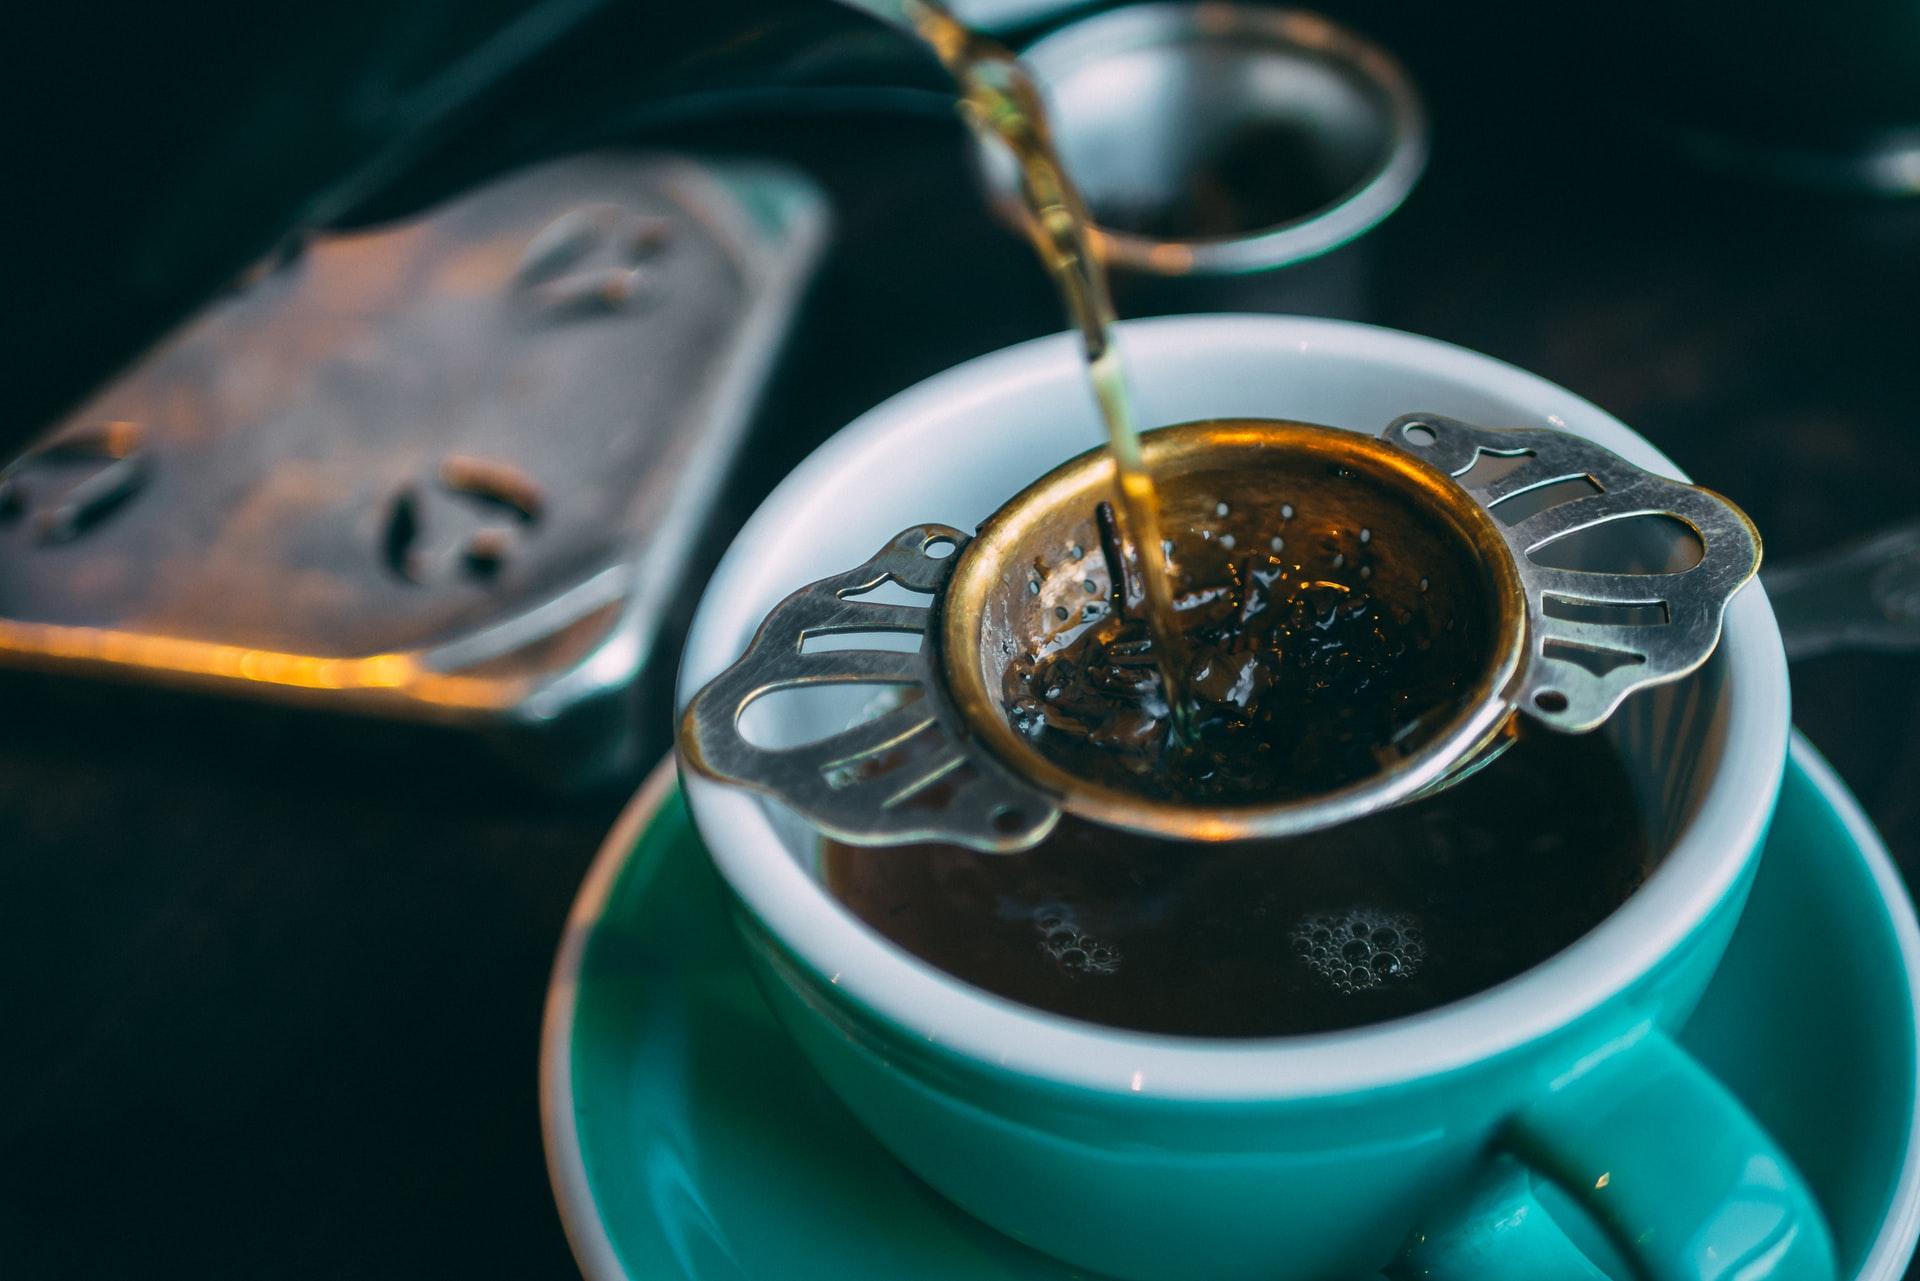 阿萨姆红茶的味道特点是麦芽味 阿萨姆红茶的制作过程讲解 中国咖啡网 12月17日更新